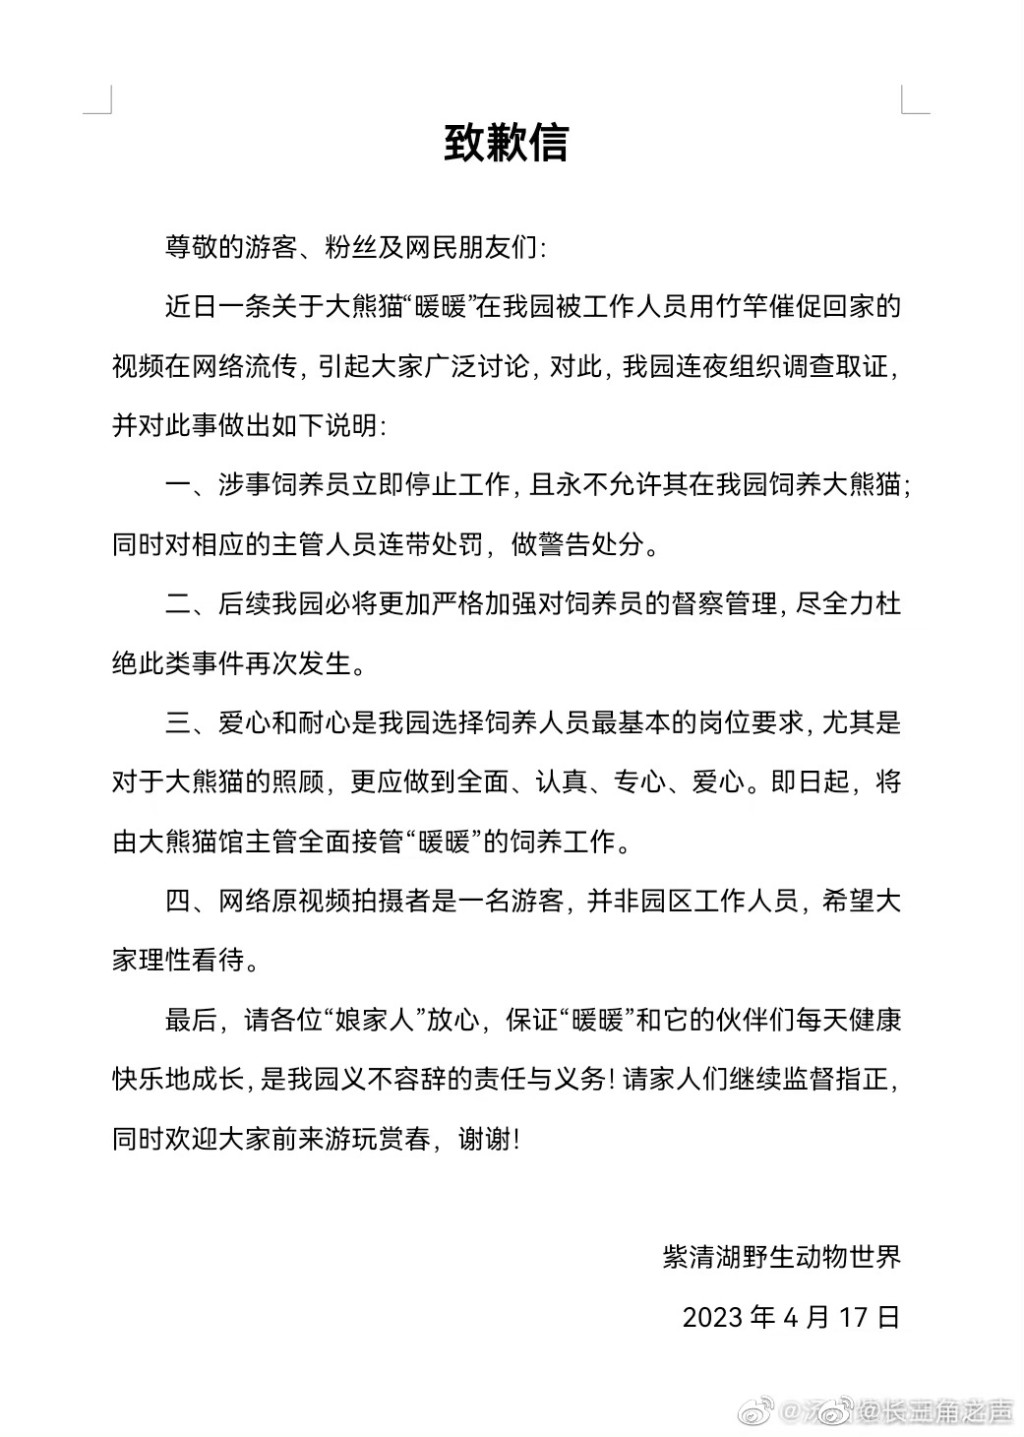 南京紫清湖野生動物世界致歉信。 網圖